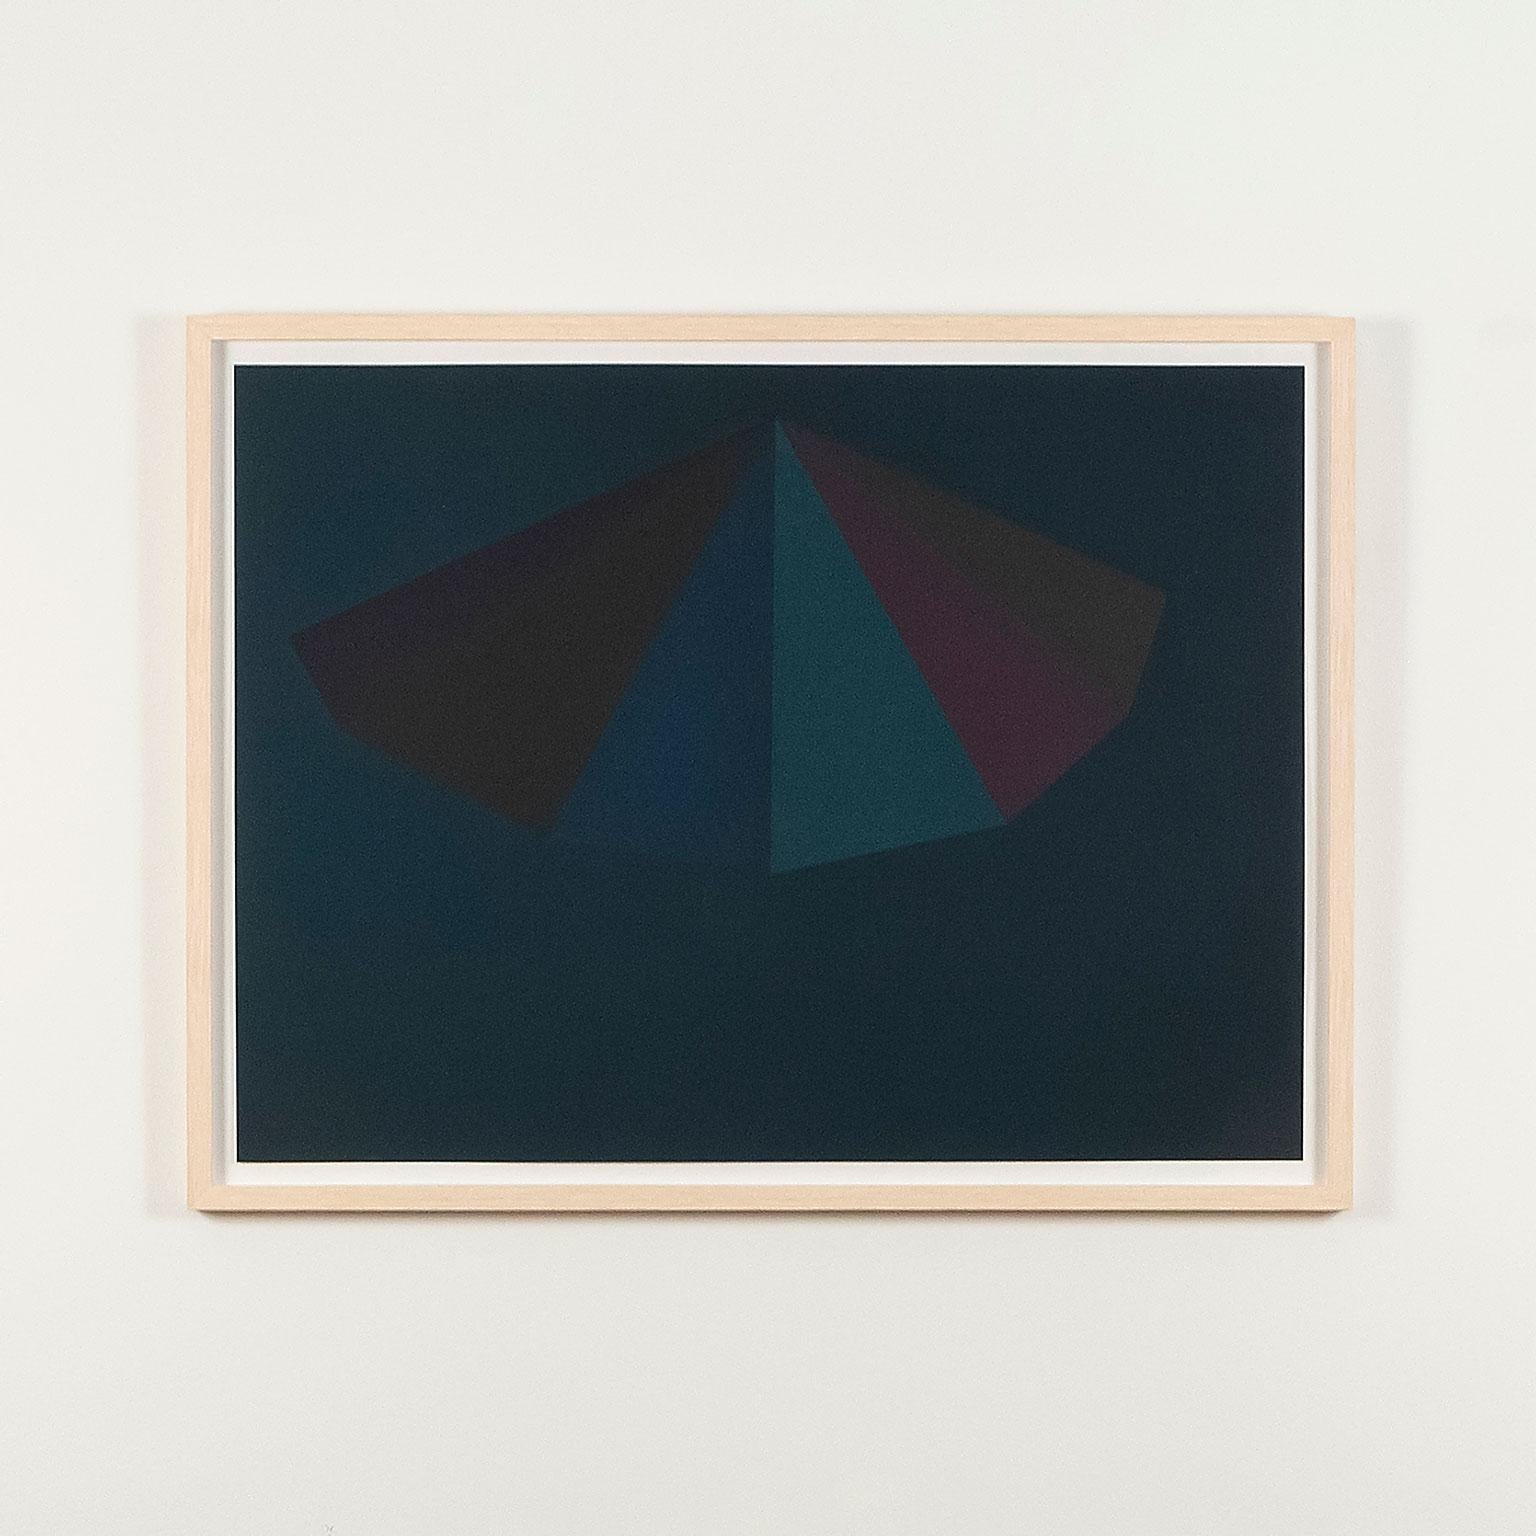 Sol LeWitt Abstract Print - A Pyramid